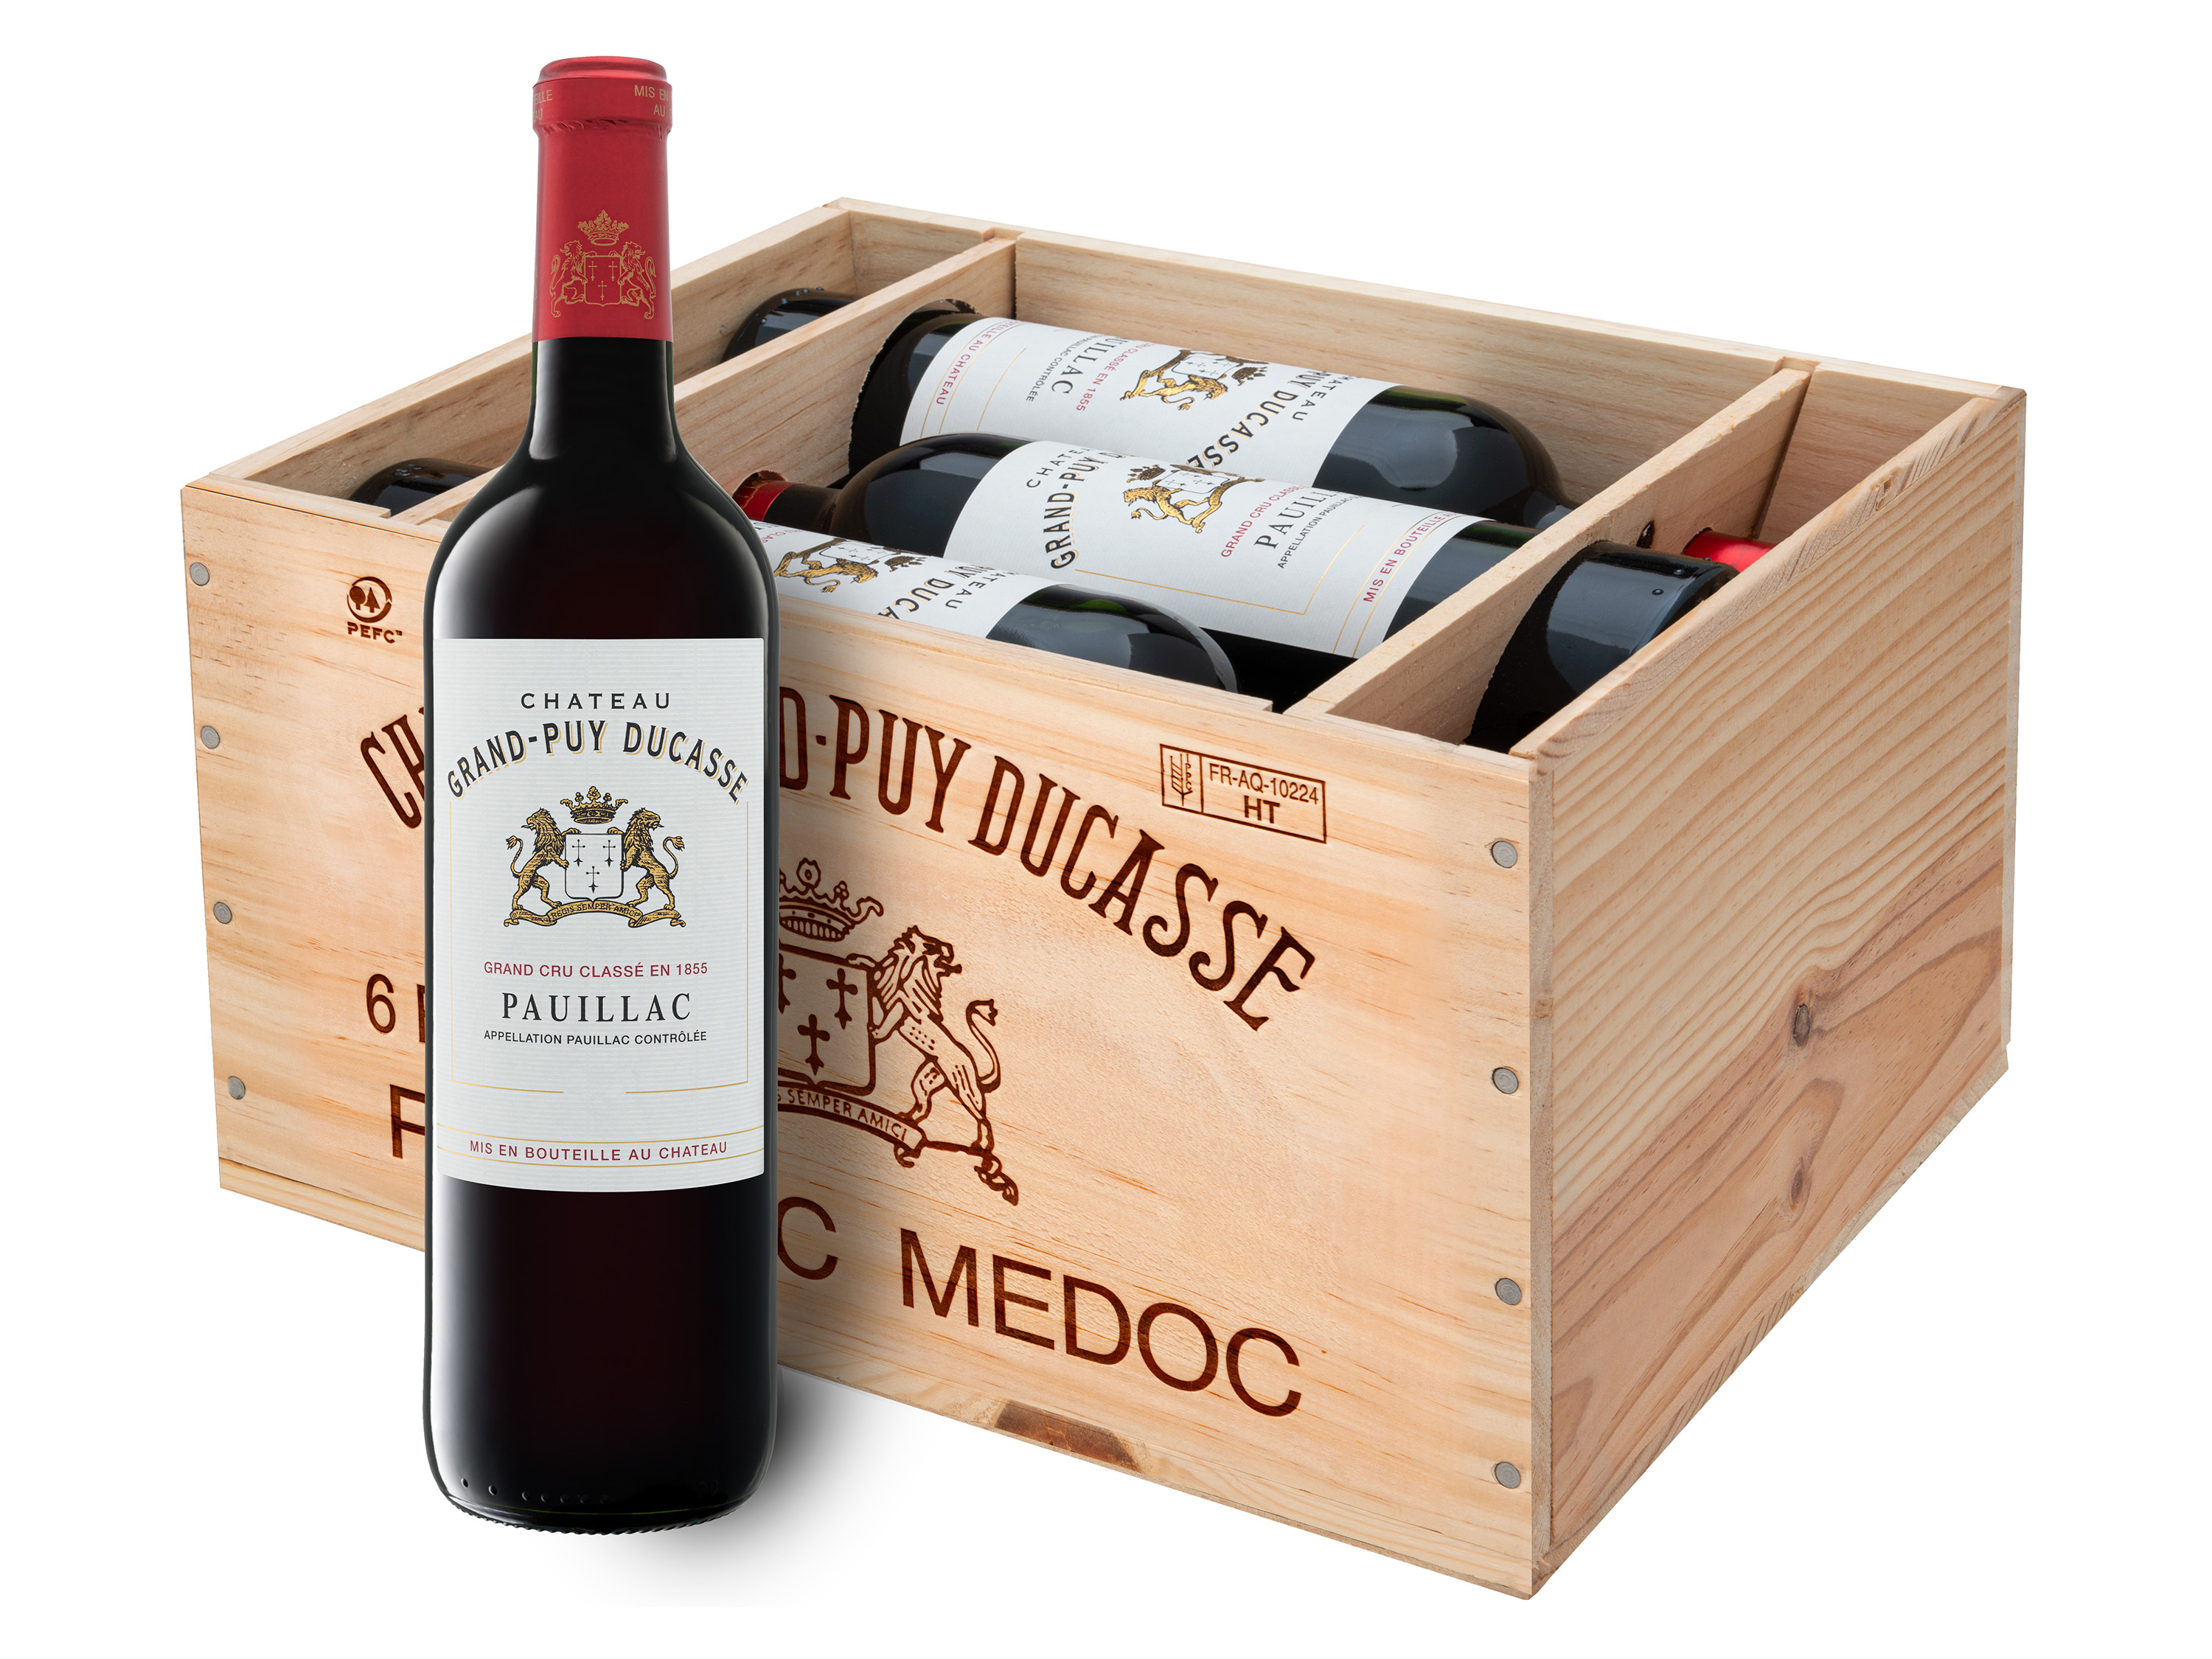 6 x 0,75-l-Flasche Château Grand-Puy Ducasse 5éme Grand Cru Classé Pauillac AOC trocken, Rotwein 2017 - Original-Holzkiste Wein & Spirituosen Lidl DE